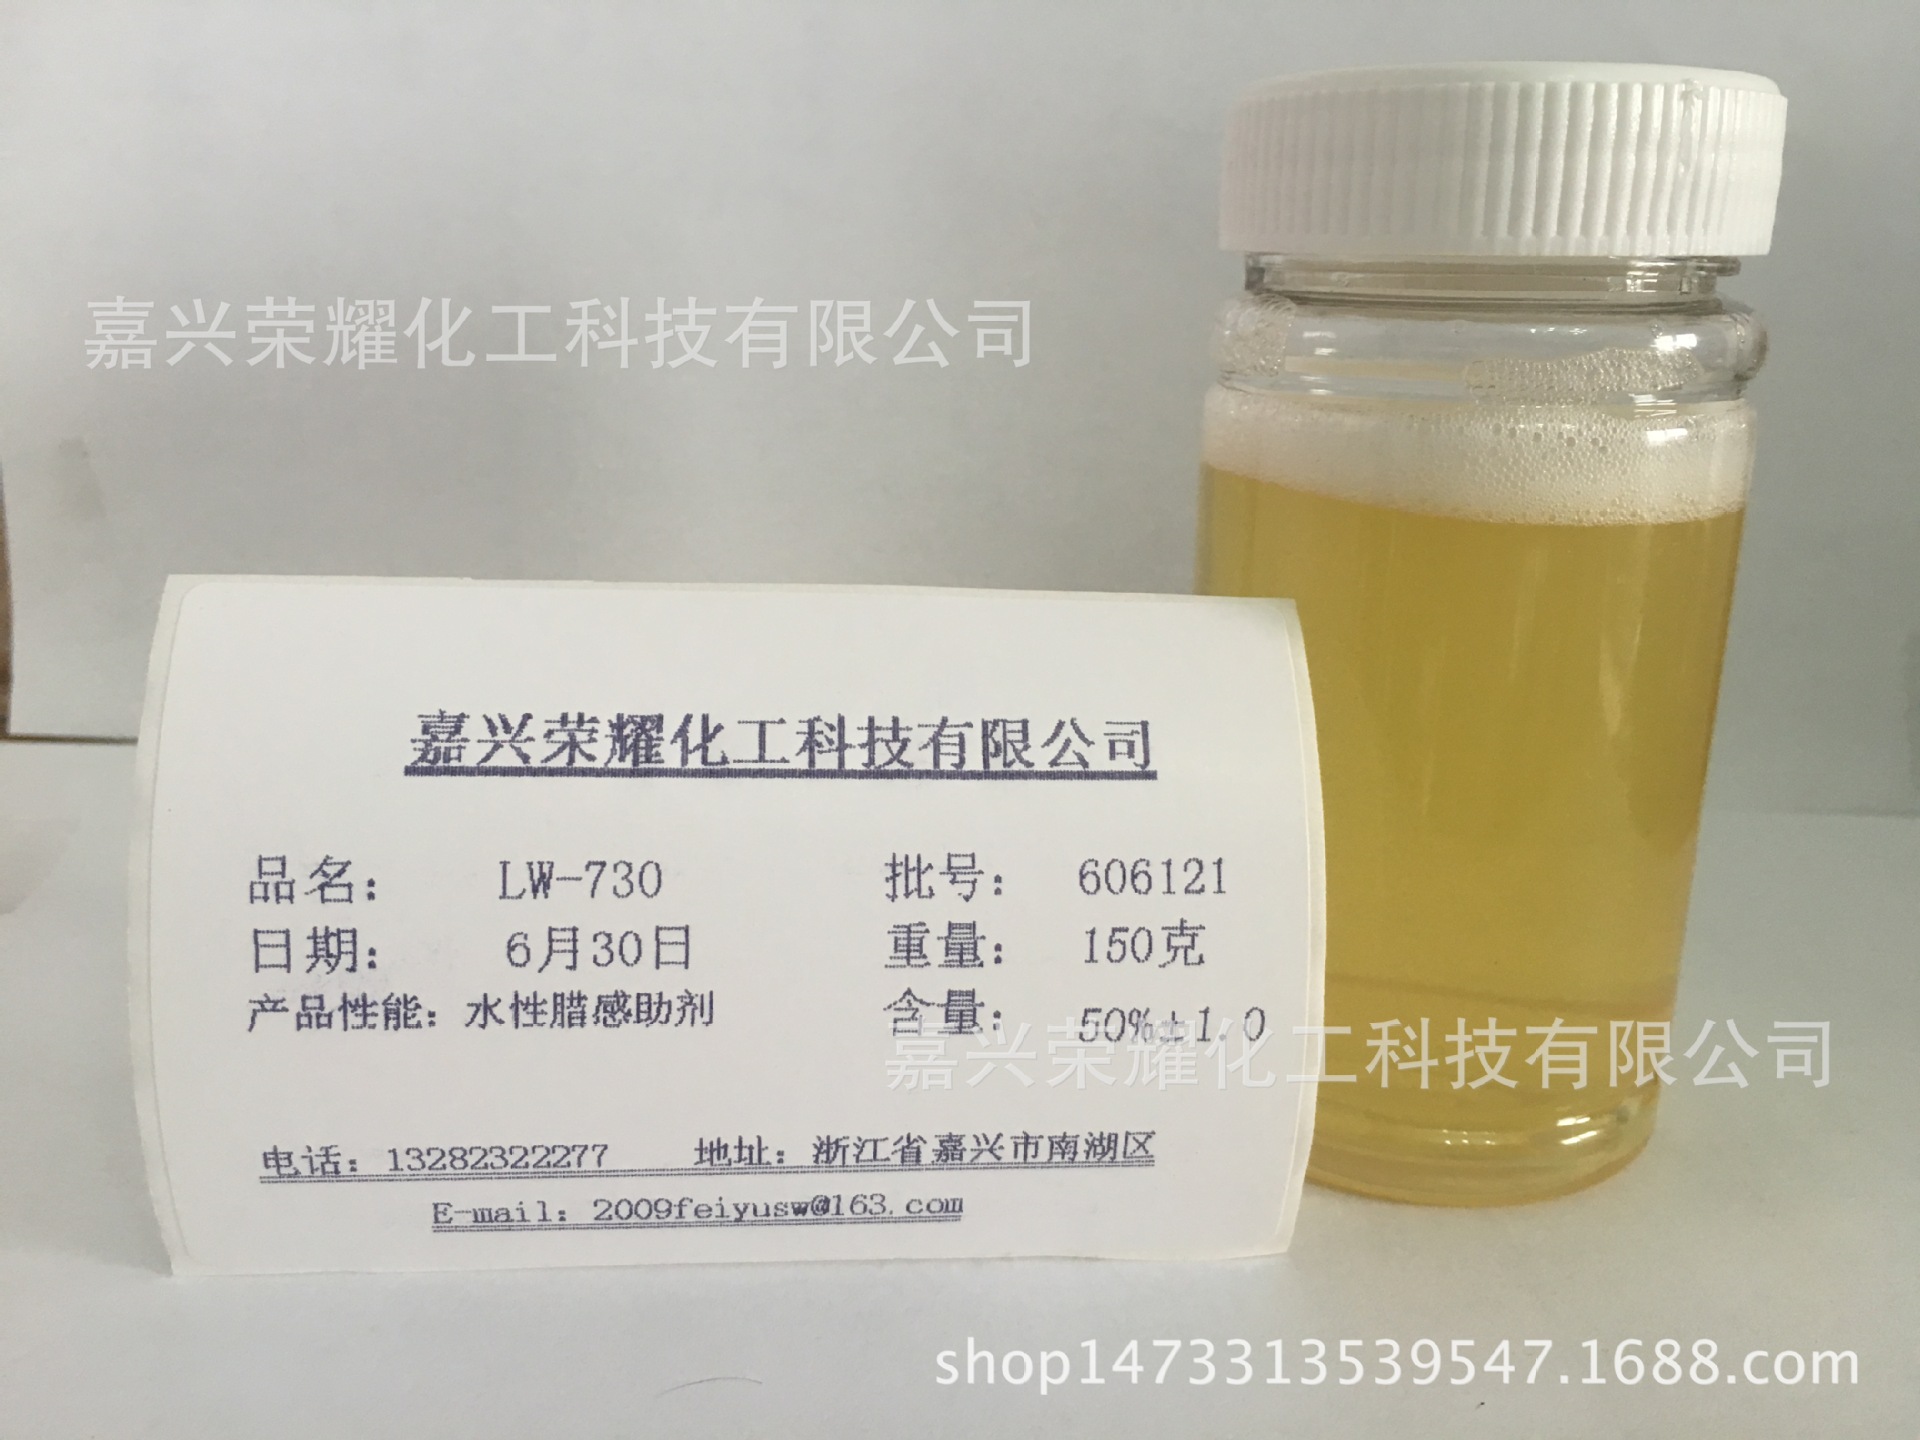 水性材料添加型助剂 水性腊感助剂 LW-730